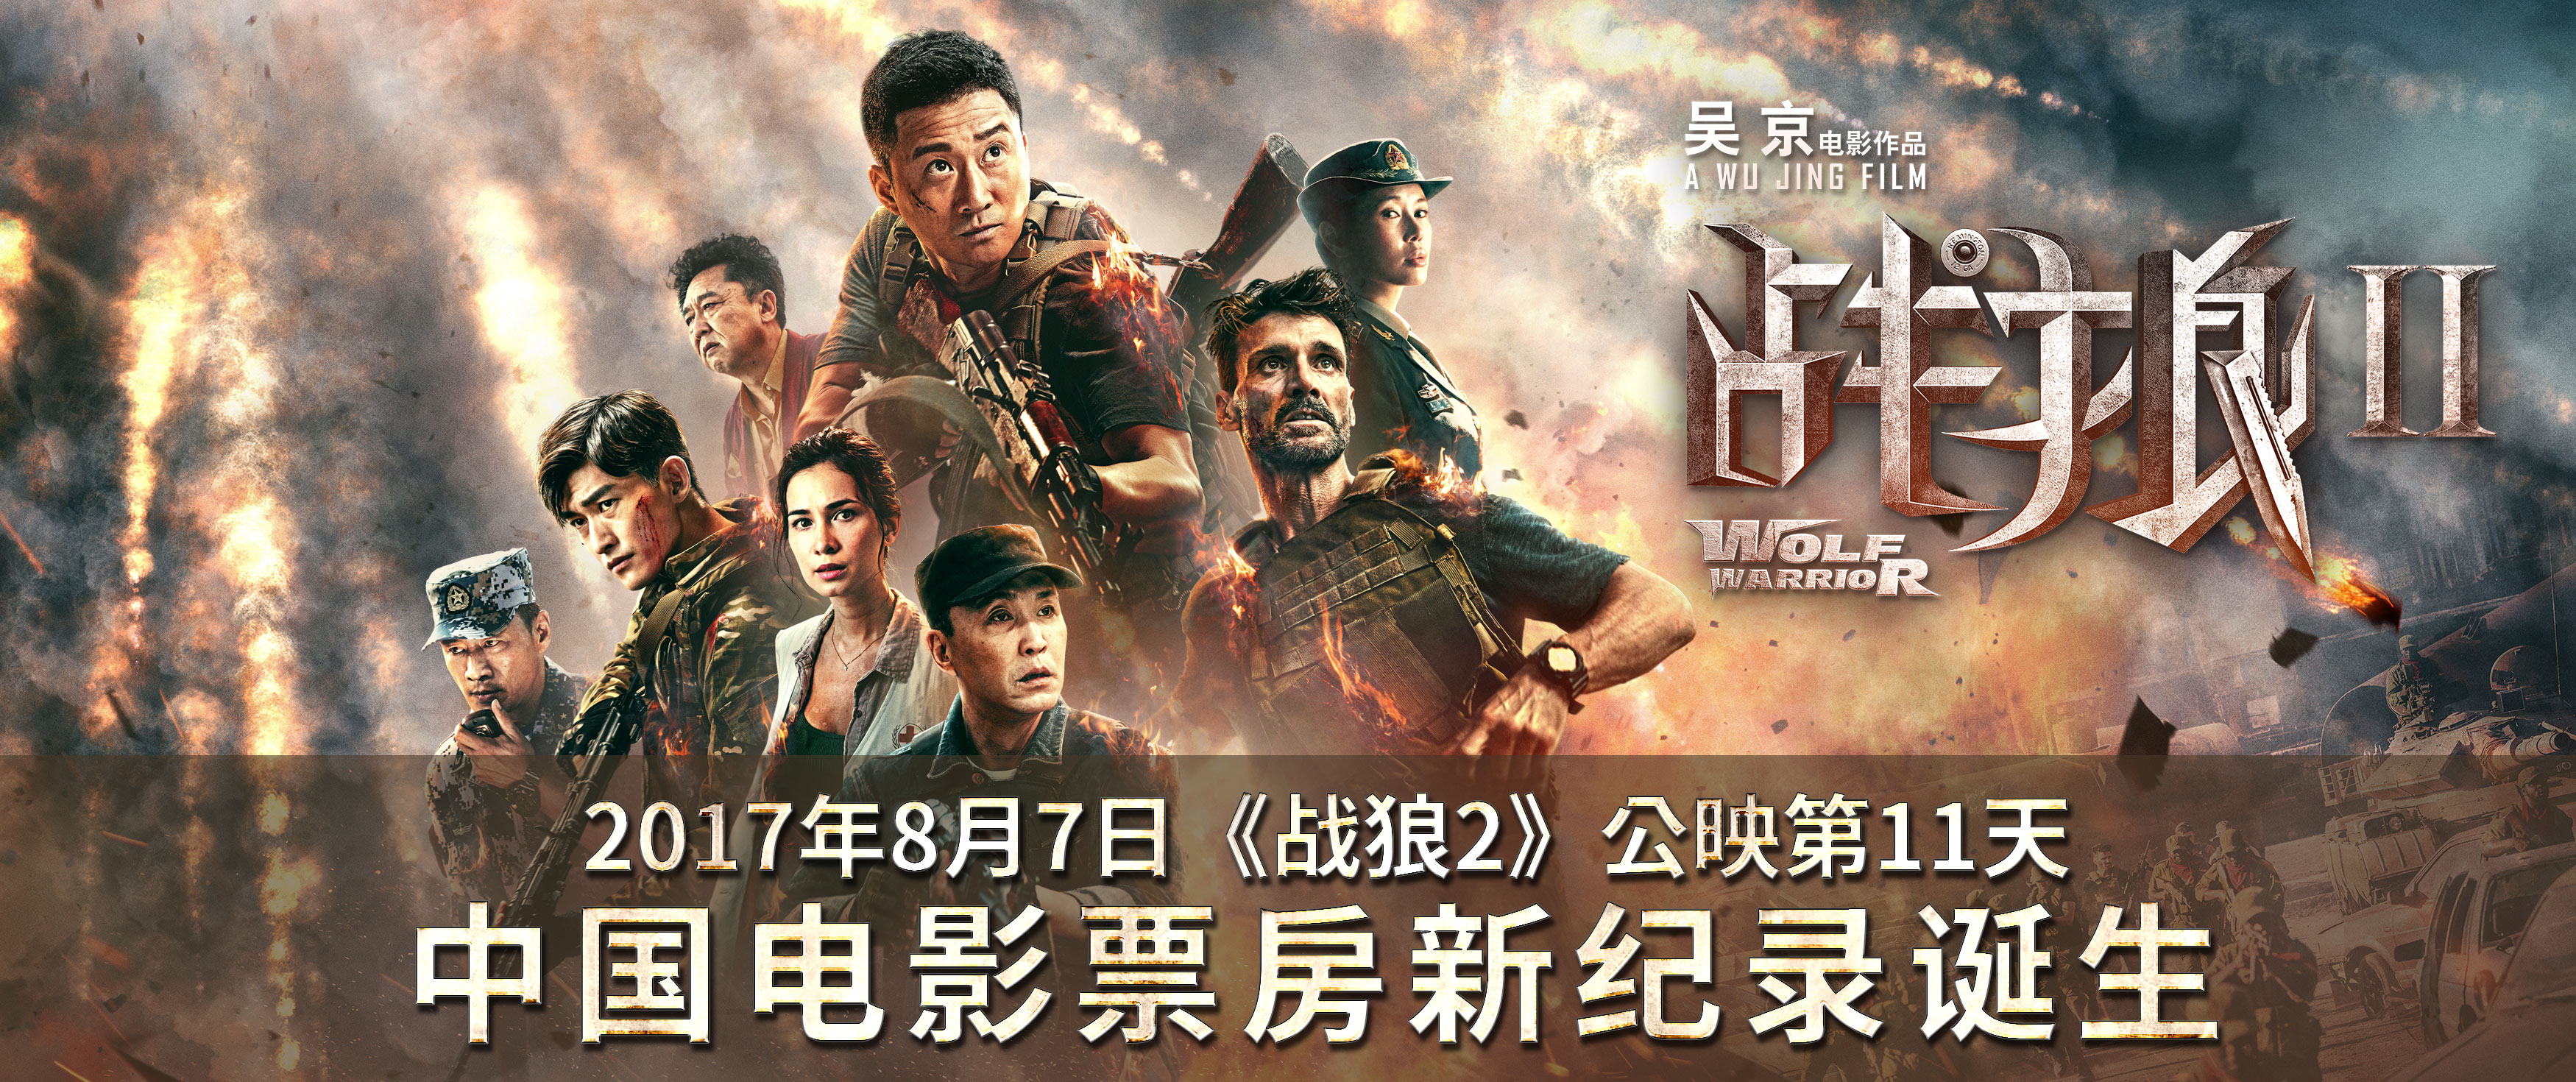 《战狼2》刷新中国影史票房纪录 与《美人鱼》海报互祝 吴京:奇迹是观众创造的 - 360娱乐，你开心就好